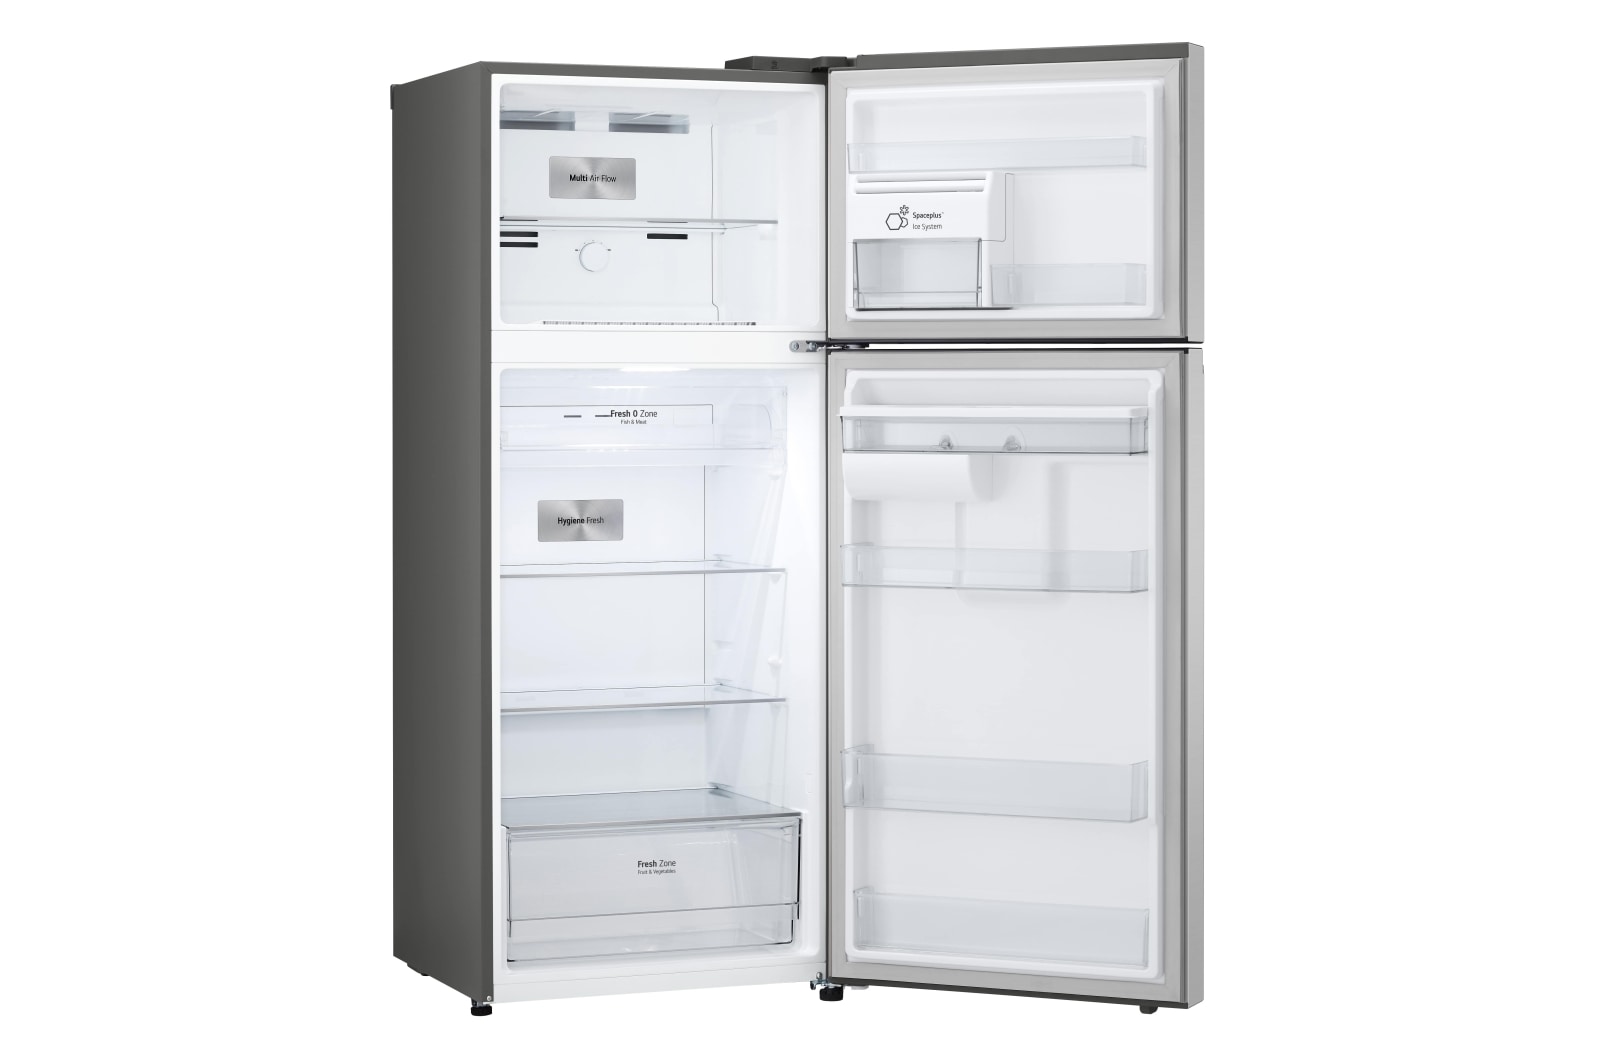 LG Smart Inverter 394L Tủ lạnh ngăn đá trên với công nghệ Hygiene Fresh (Bạc), GN-D392PSA